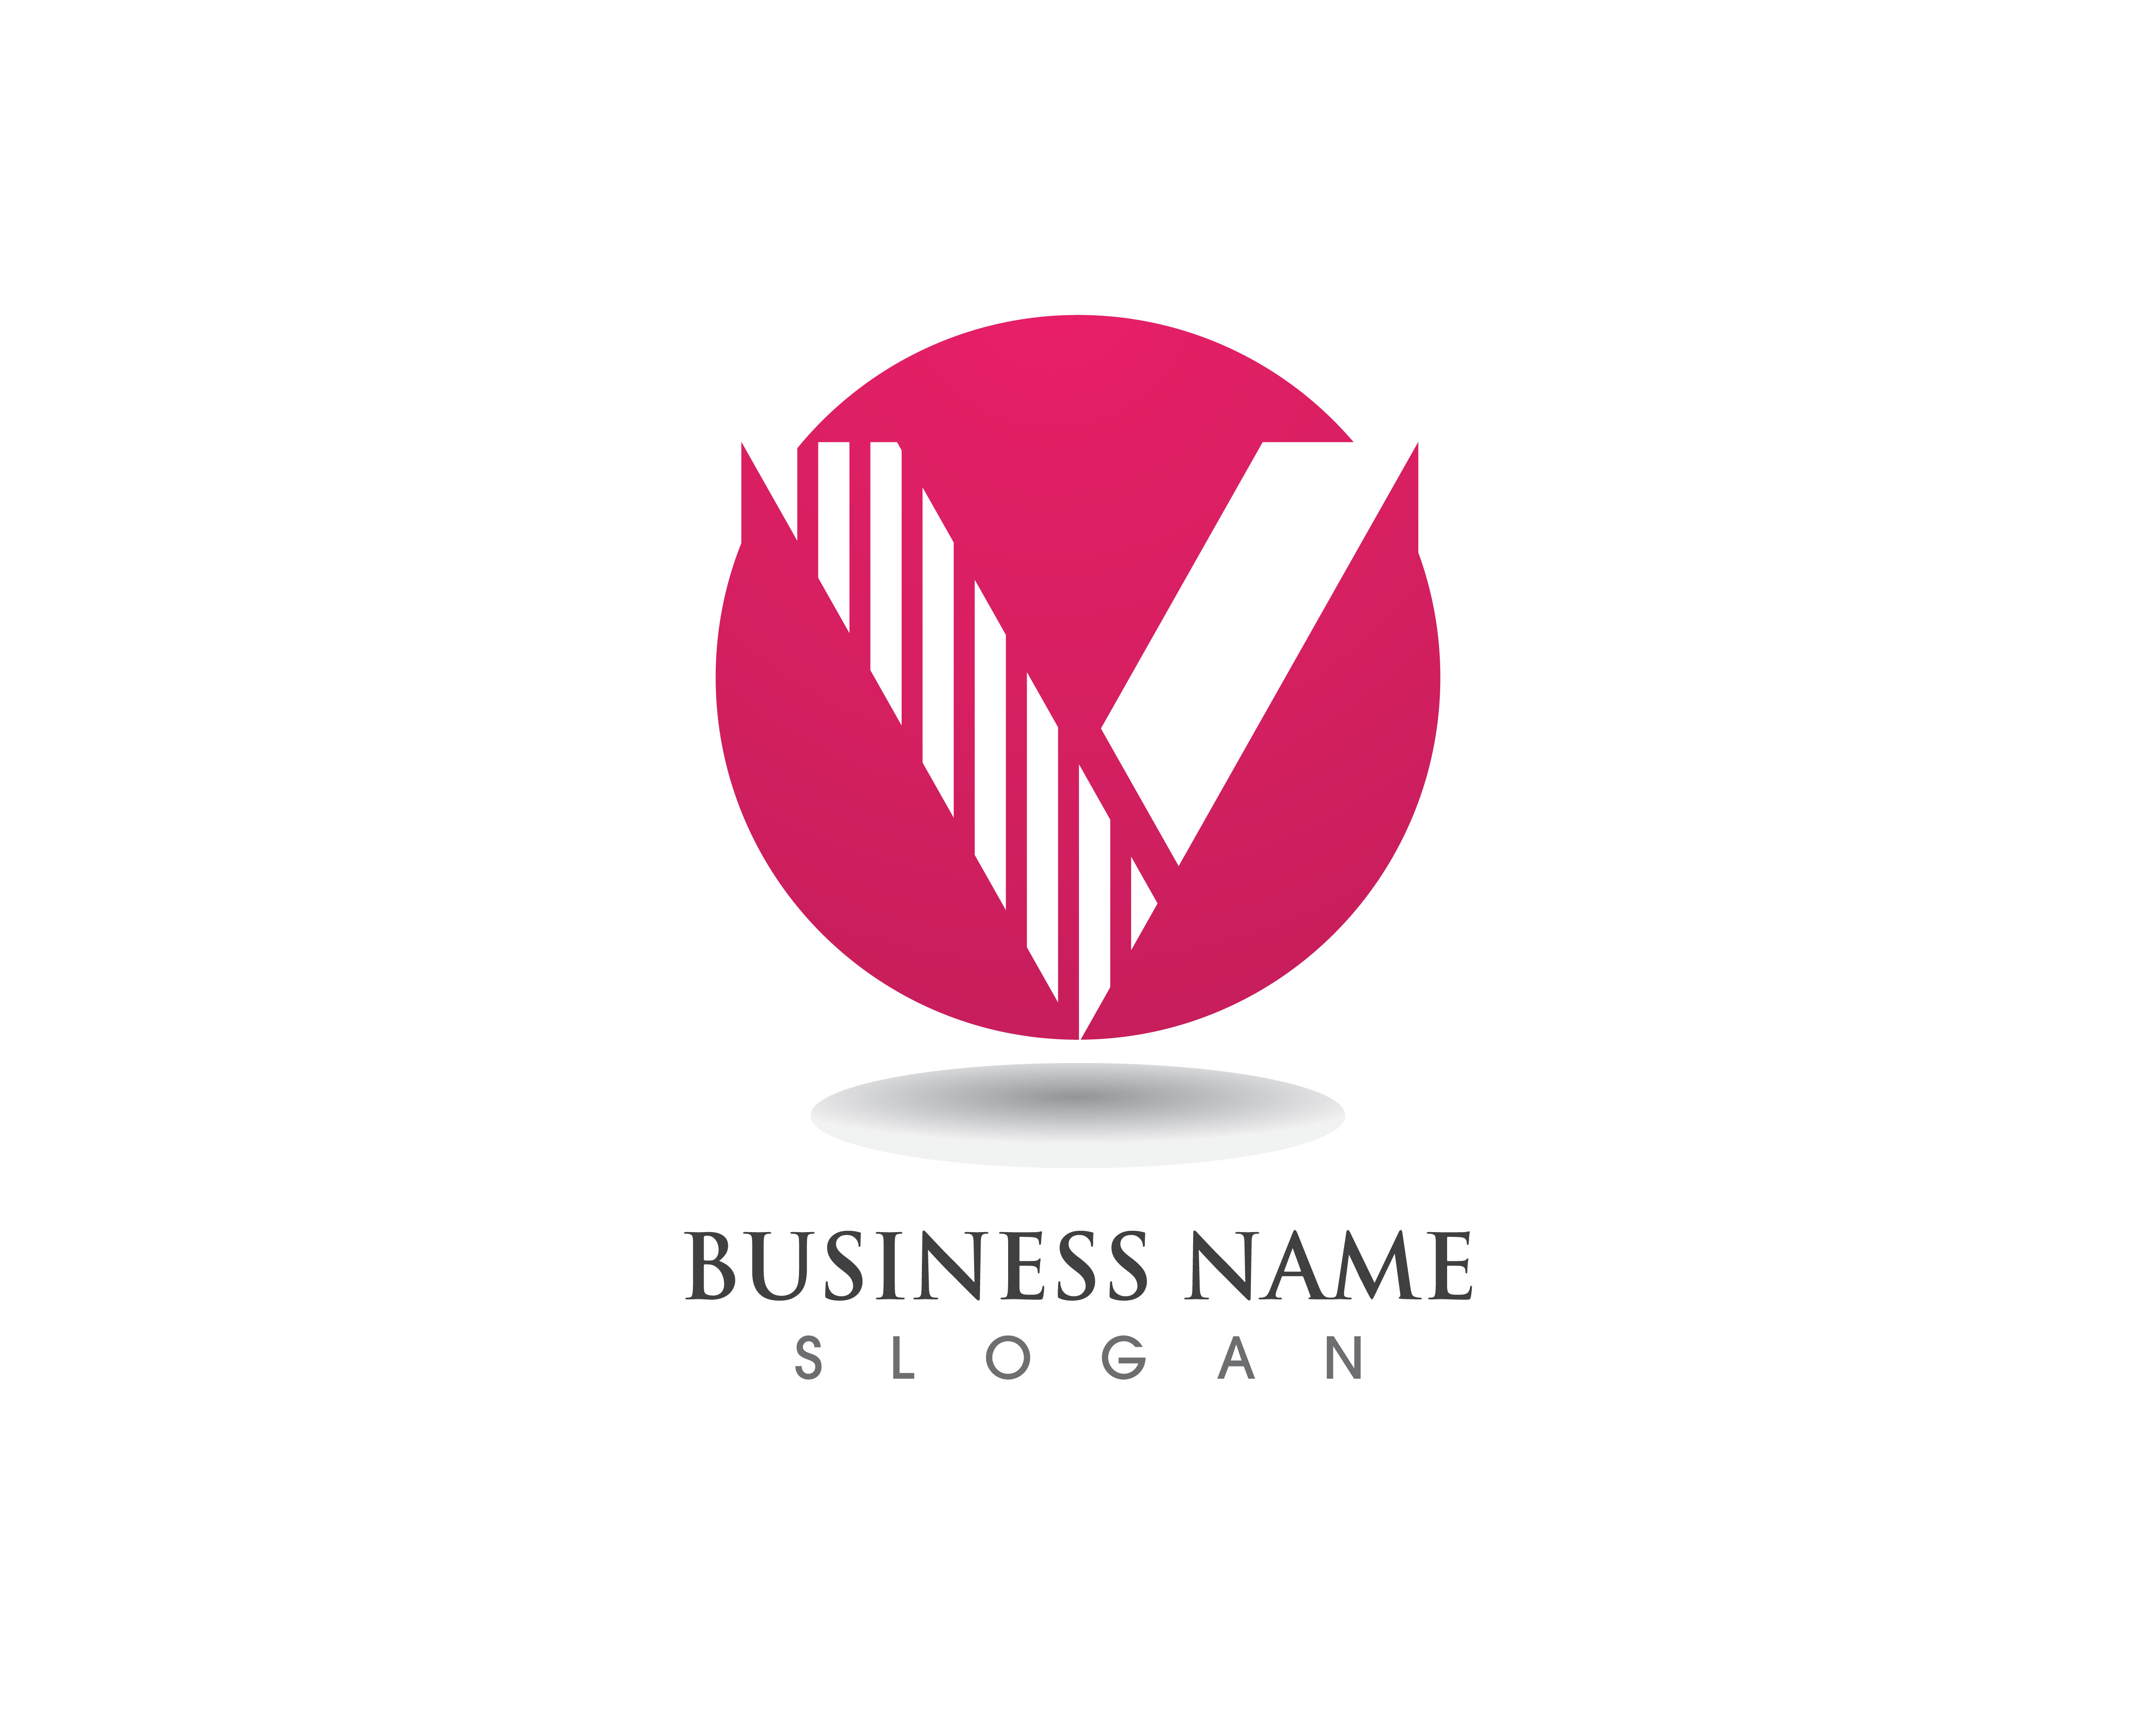 V logo business letter icons 623930 Vector Art at Vecteezy